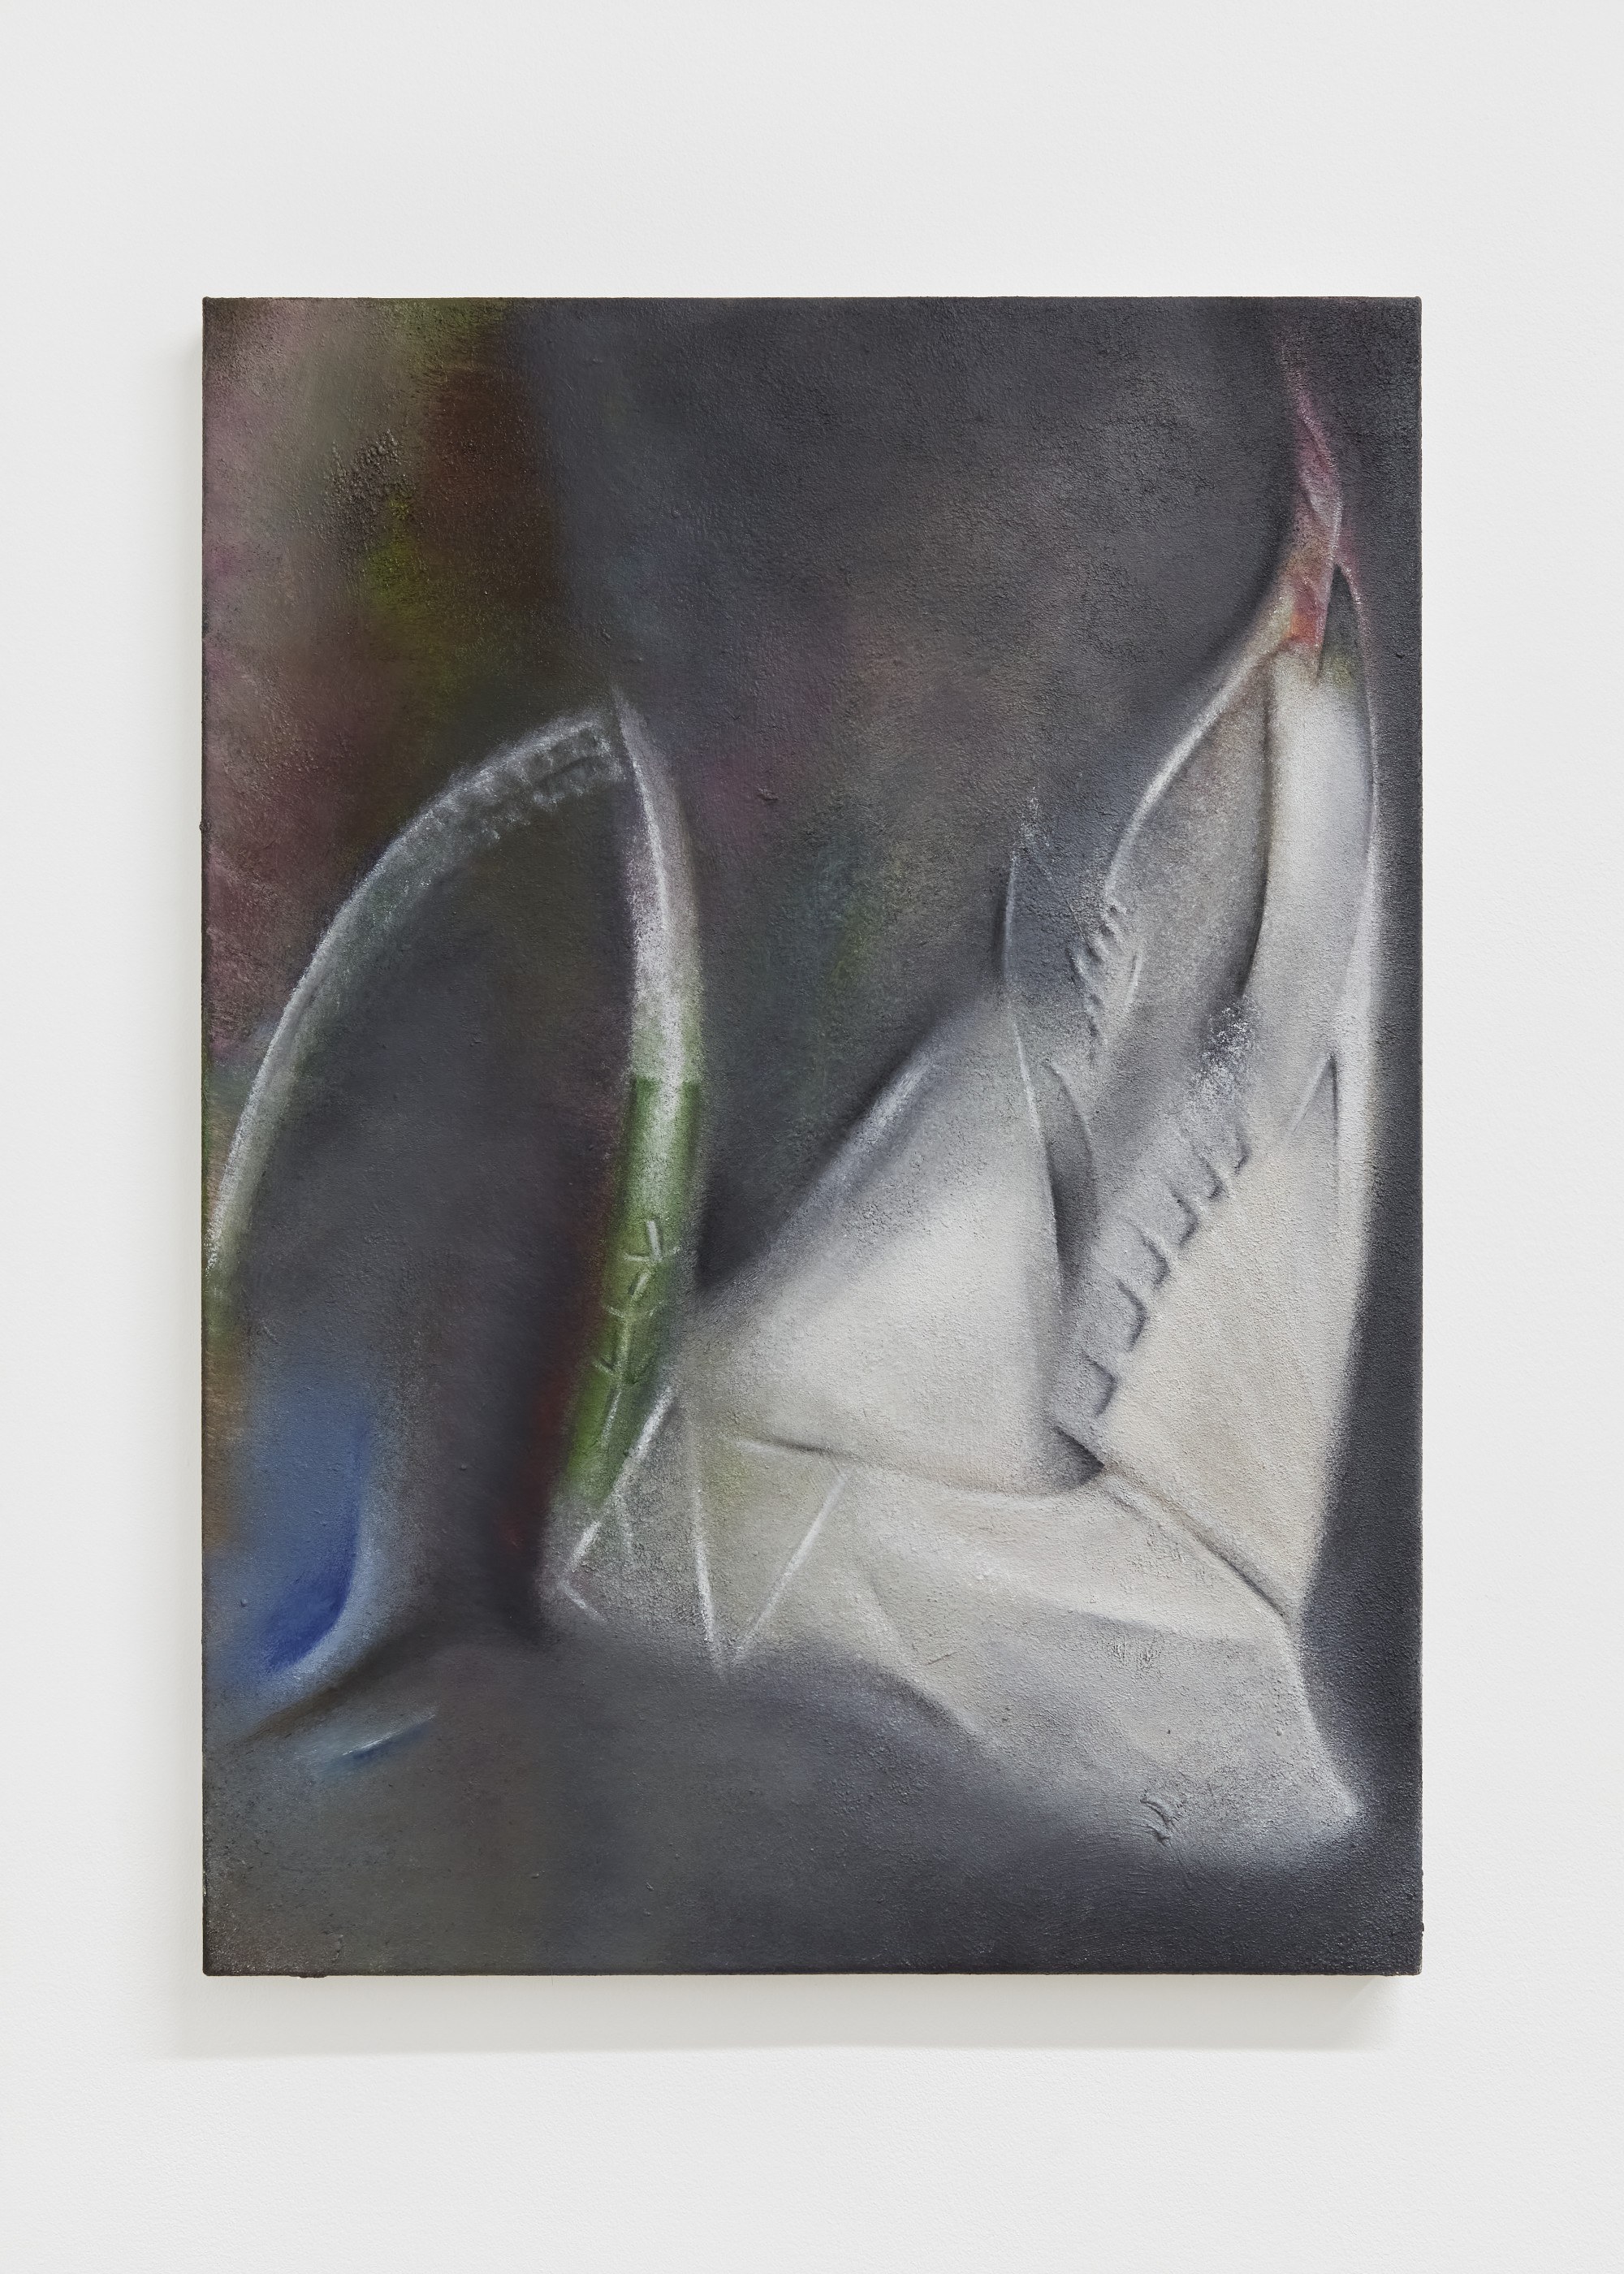 Kin-Ting Li, Untitled, 2022. Oil on canvas, 64 x 46.5 cm